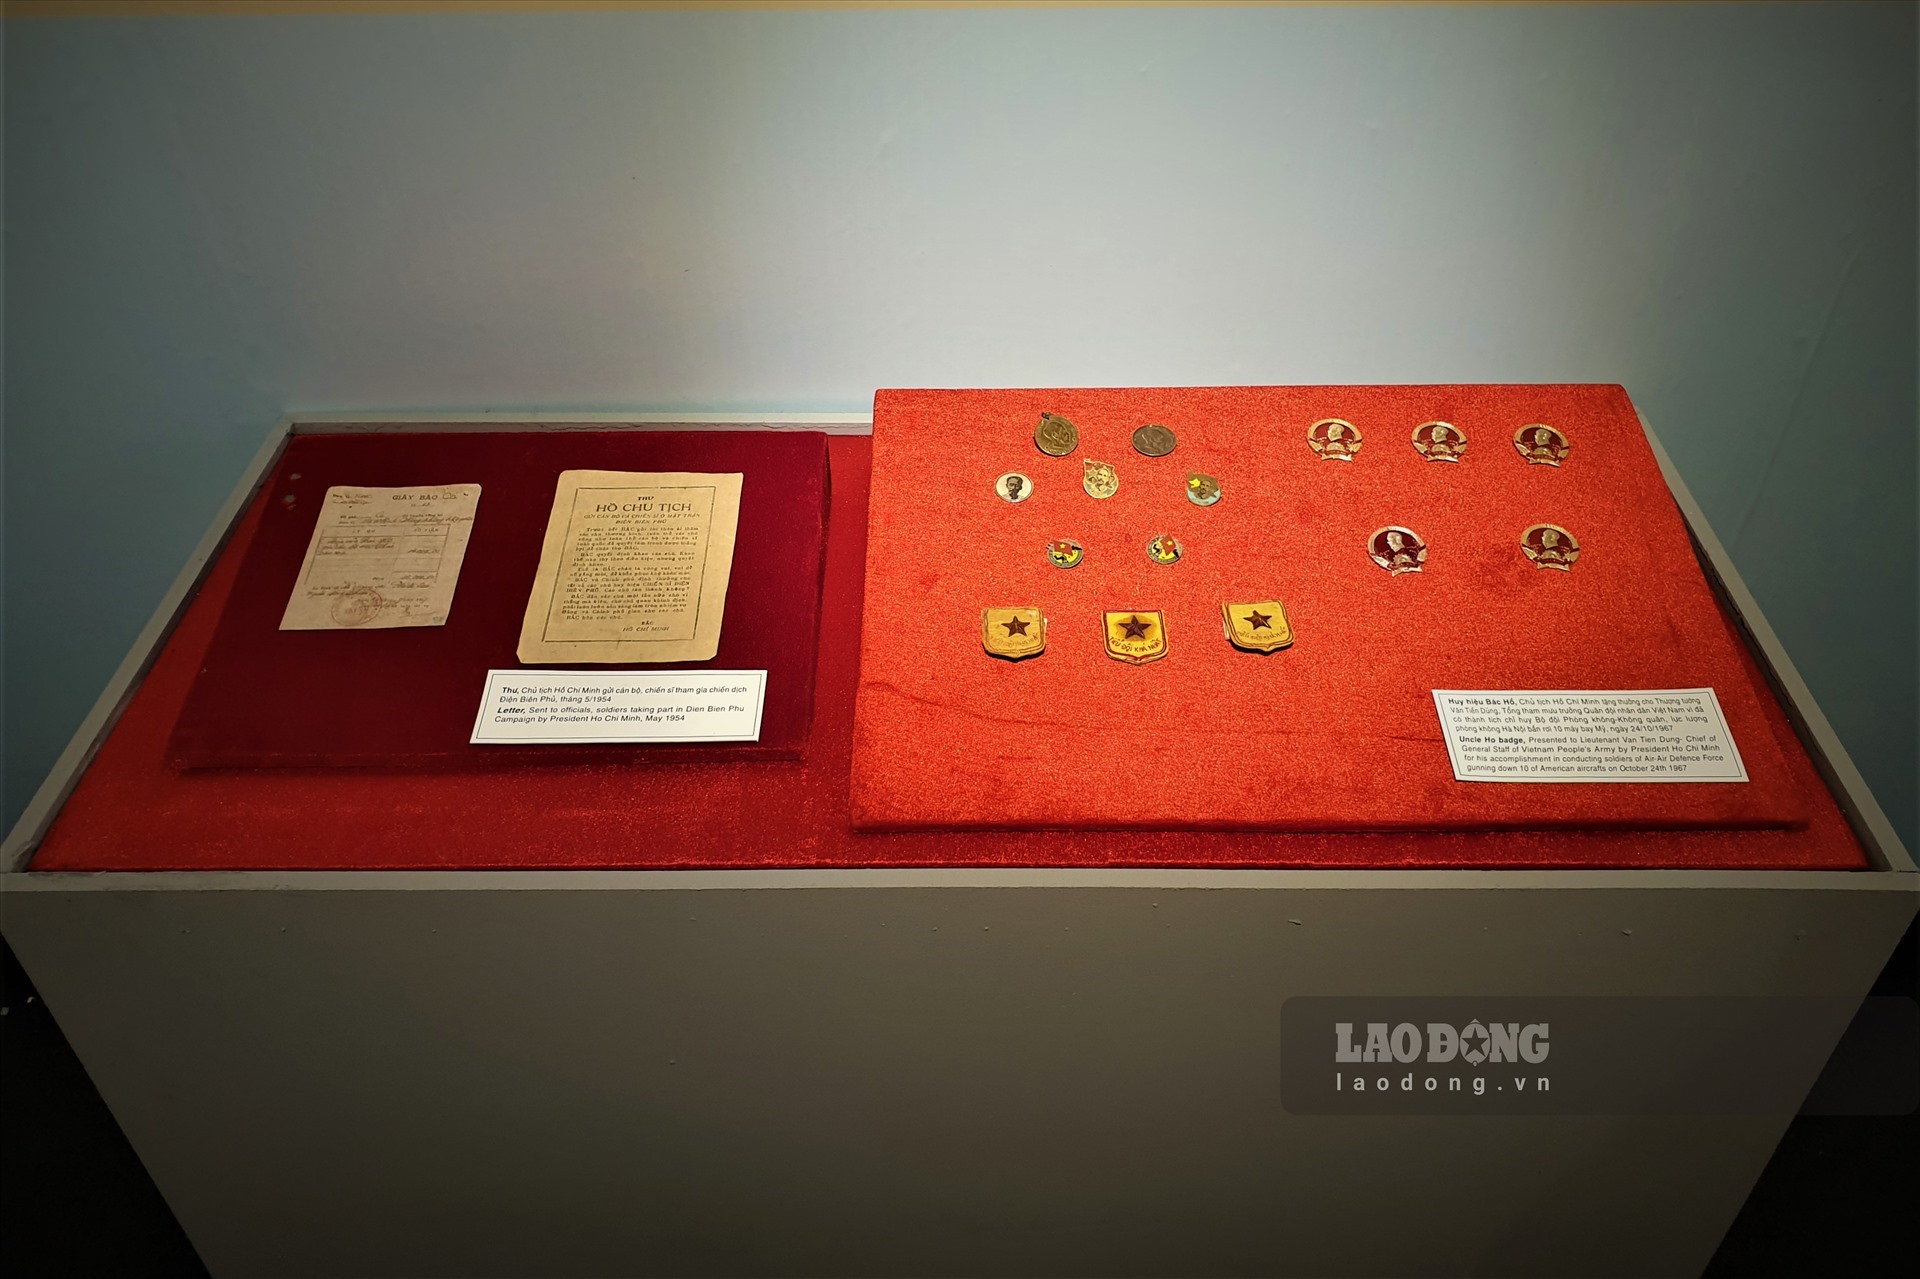 Đặc biệt, bộ sưu tập huân huy chương mà Chủ tịch Hồ Chí Minh đã dành tặng cho những tập thể, cá nhân có thành tích tiêu biểu trong các cuộc kháng chiến cũng được trưng bày tại buổi triển lãm. Ảnh Tùng Giang